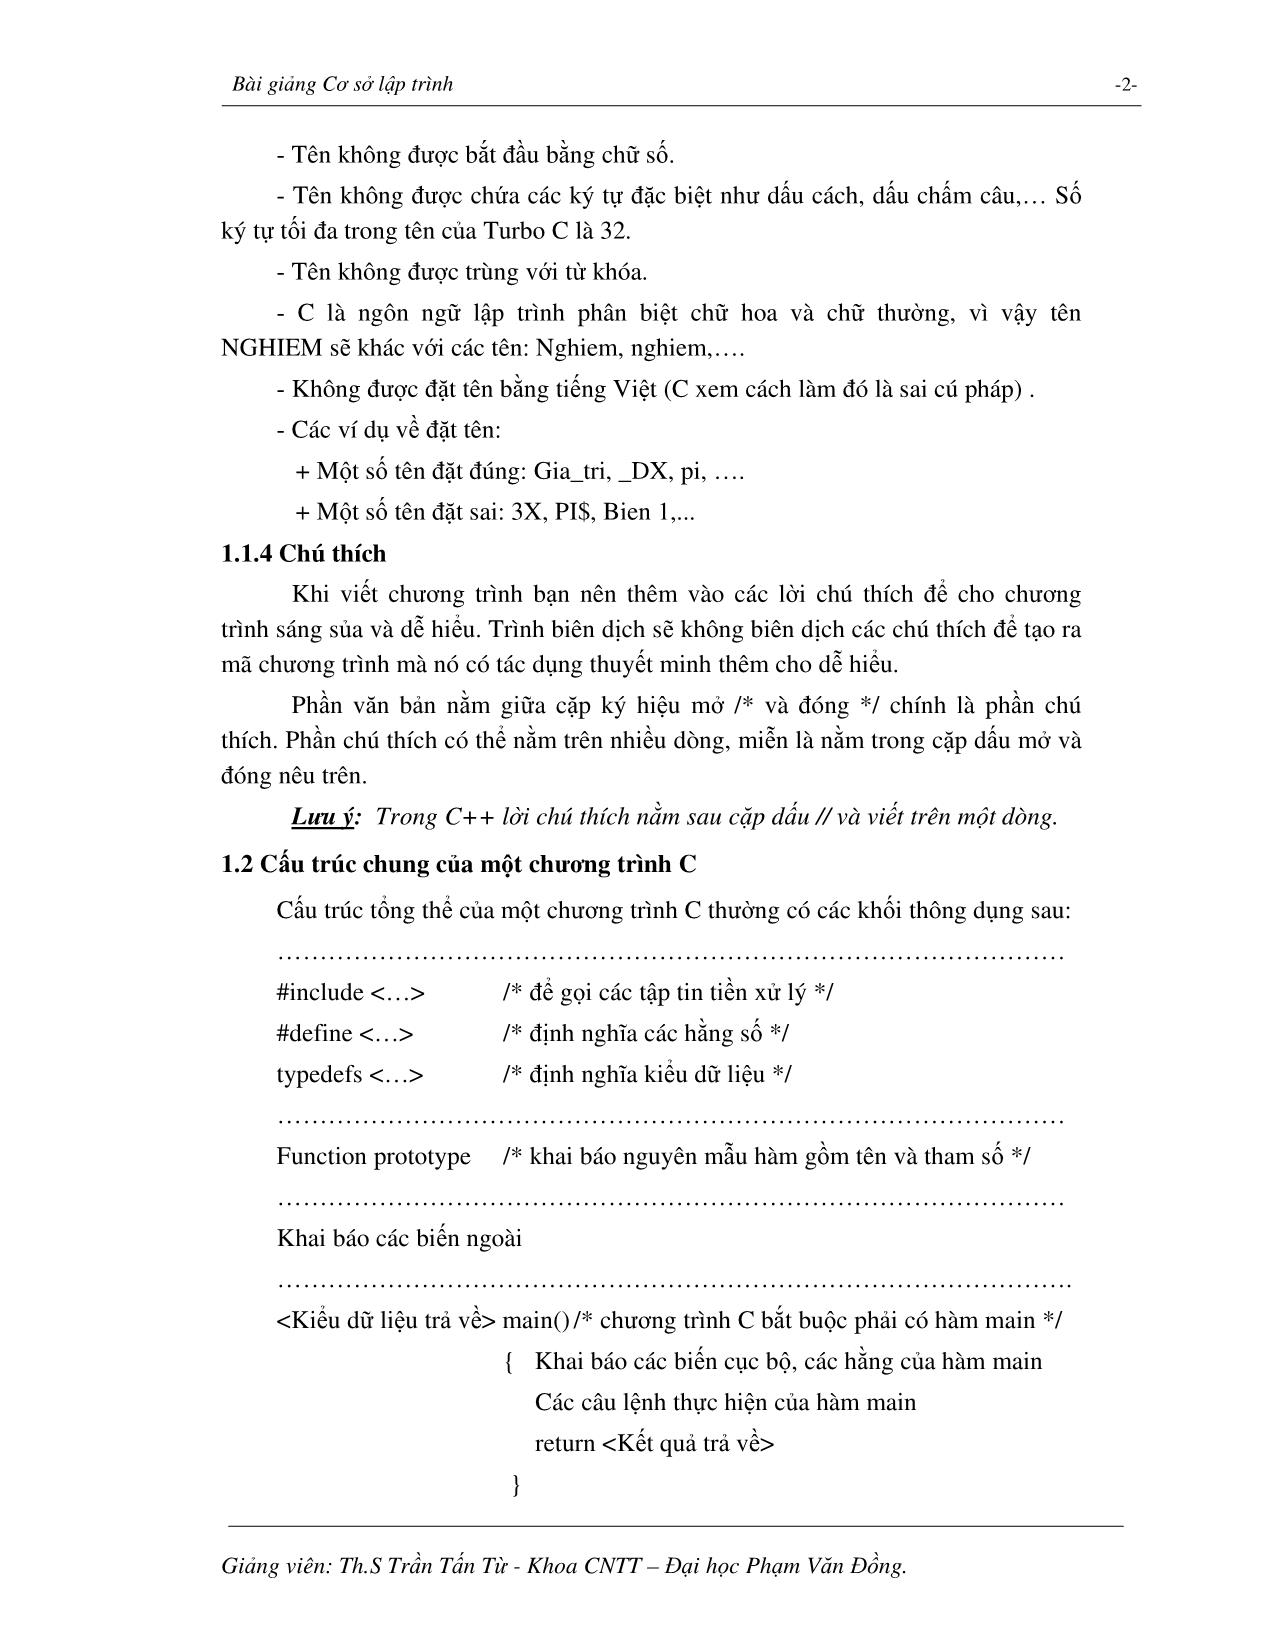 Giáo trình Cơ sở lập trình trang 4